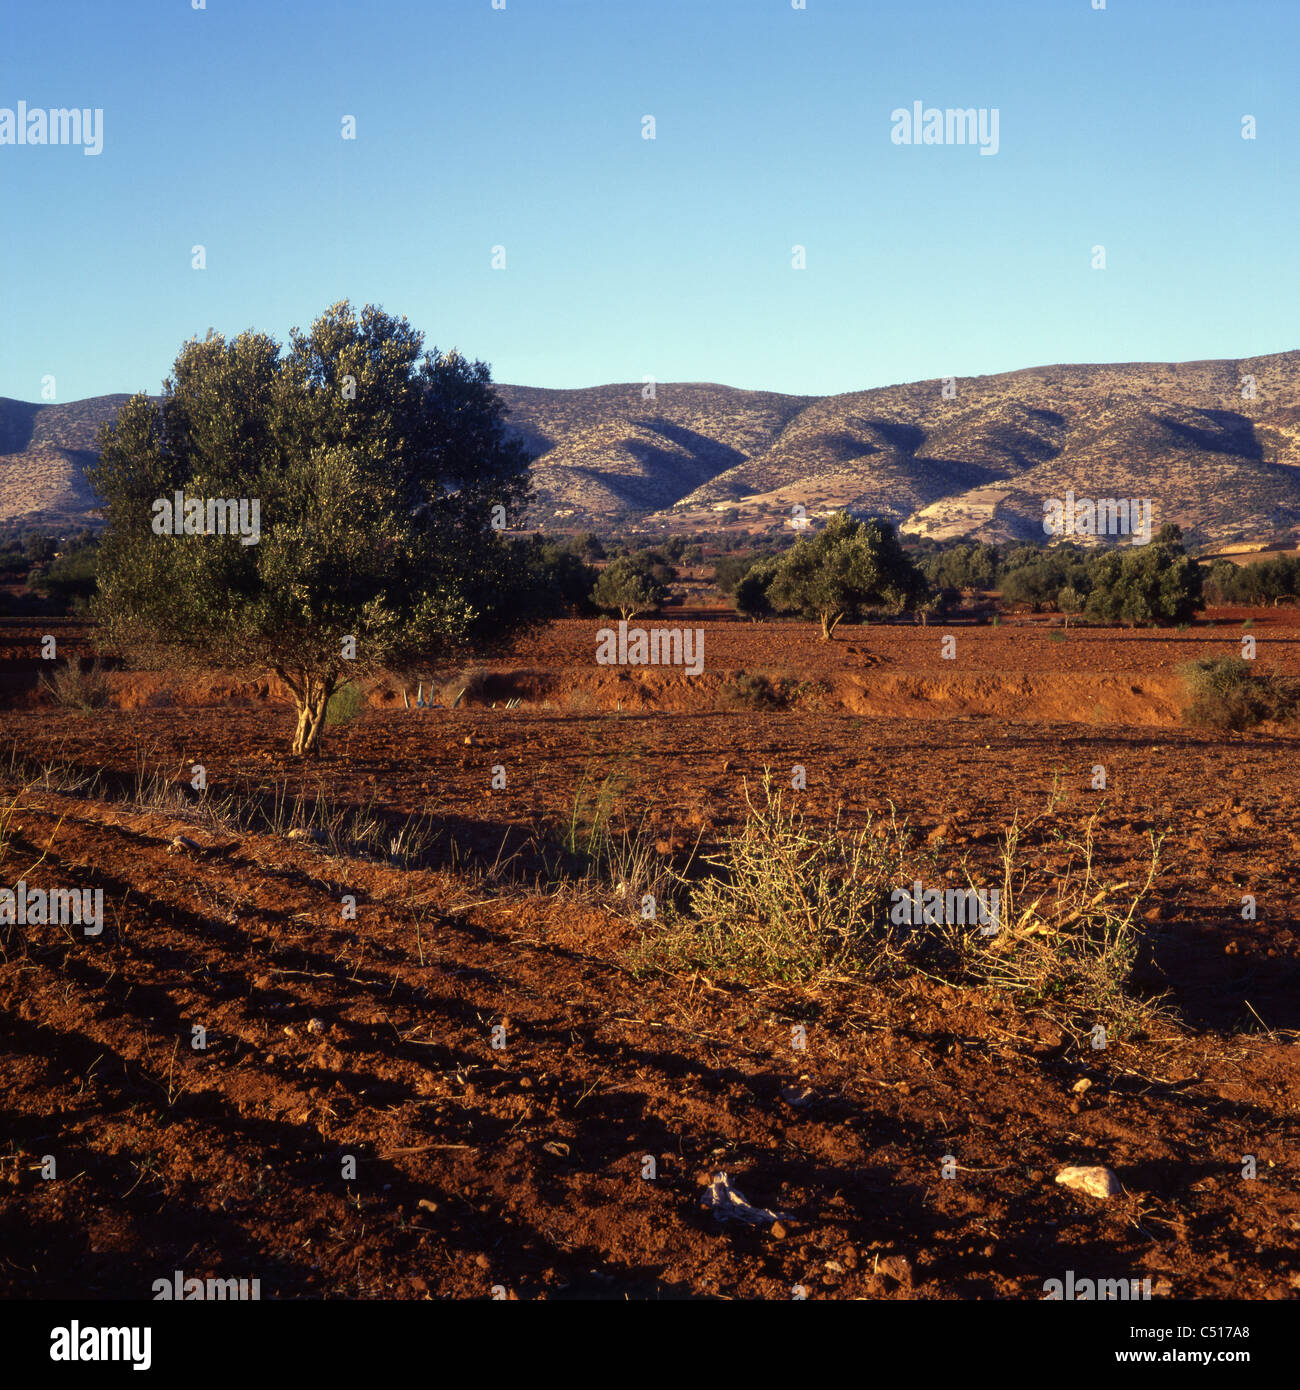 Rural landscape, Morocco Stock Photo